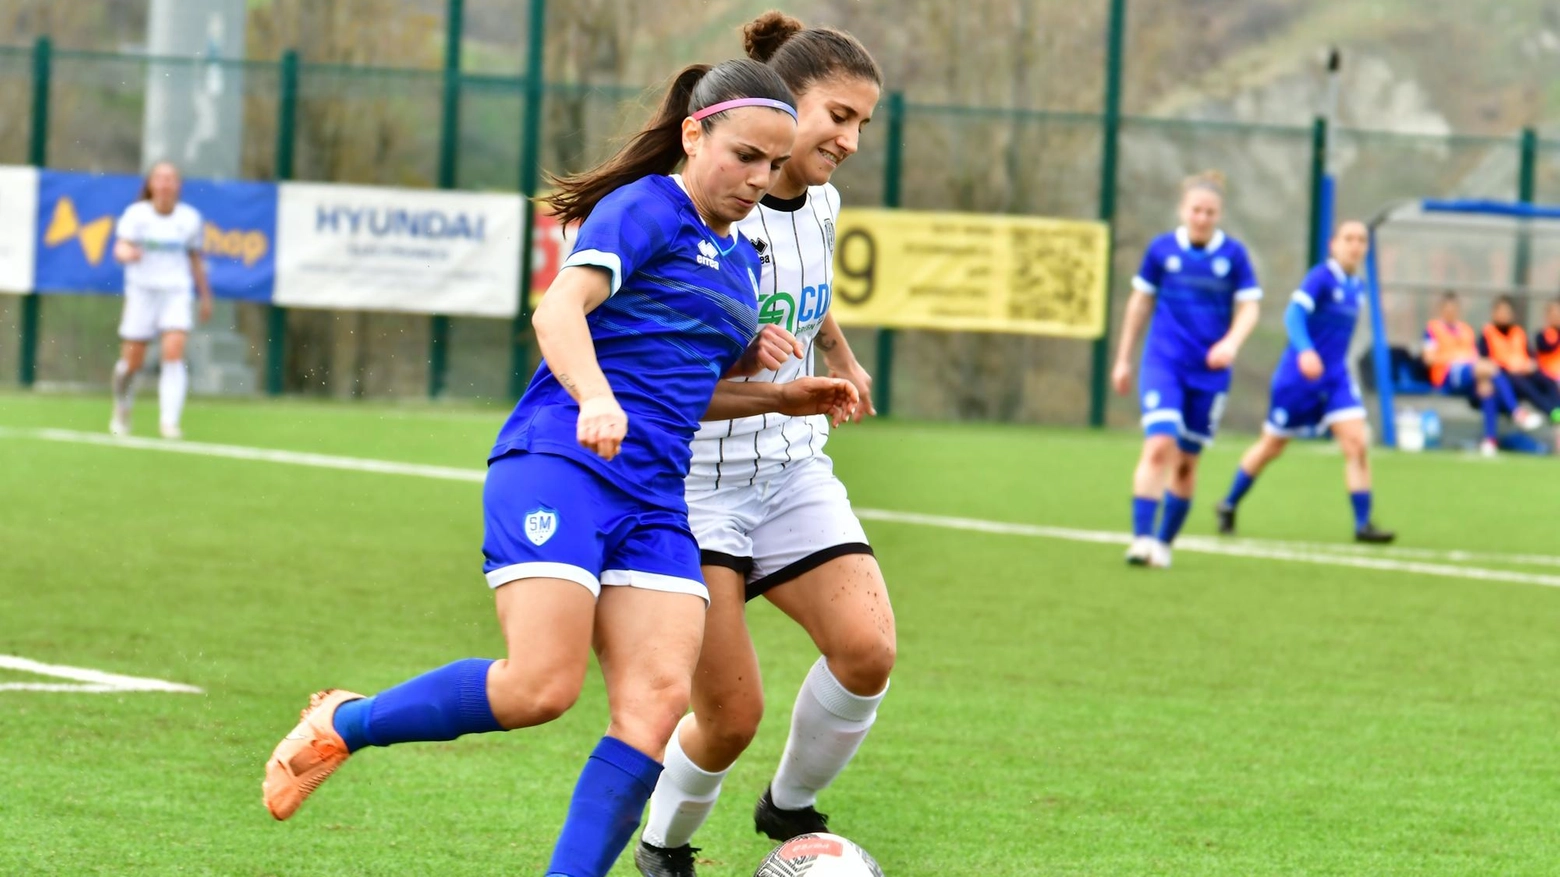 La San Marino Academy cerca la terza vittoria consecutiva in casa contro l'Arezzo dopo la sconfitta con il Parma. La Serie B femminile si prepara per la 21ª giornata con partite cruciali per la classifica.